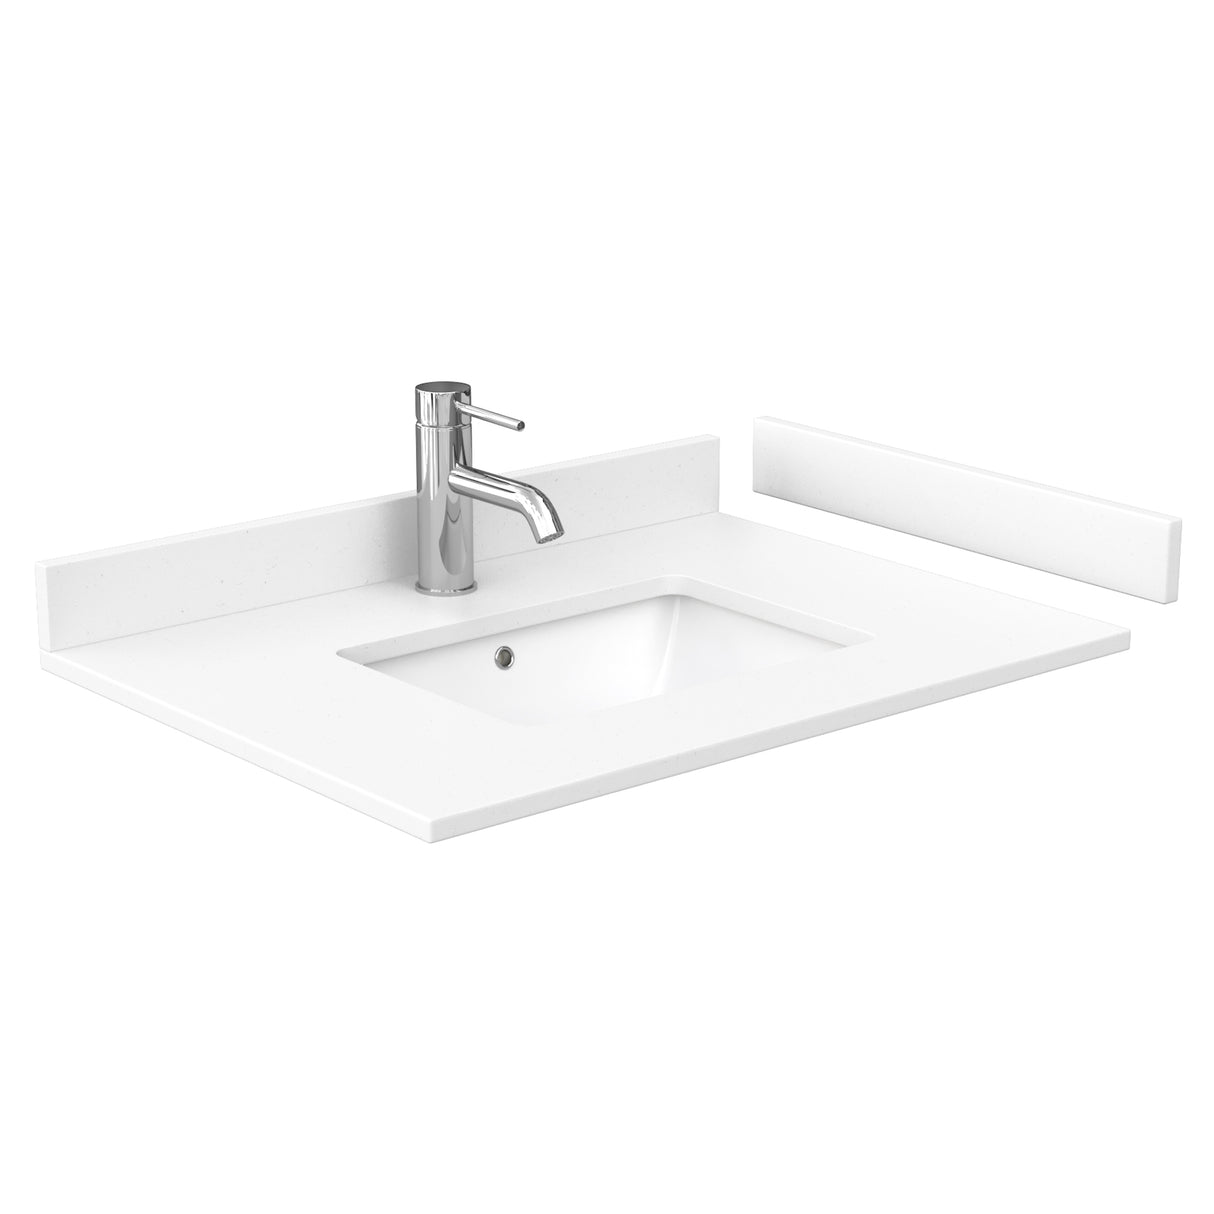 Daria 30 Inch Single Bathroom Vanity in Dark Espresso White Cultured Marble Countertop Undermount Square Sink No Mirror